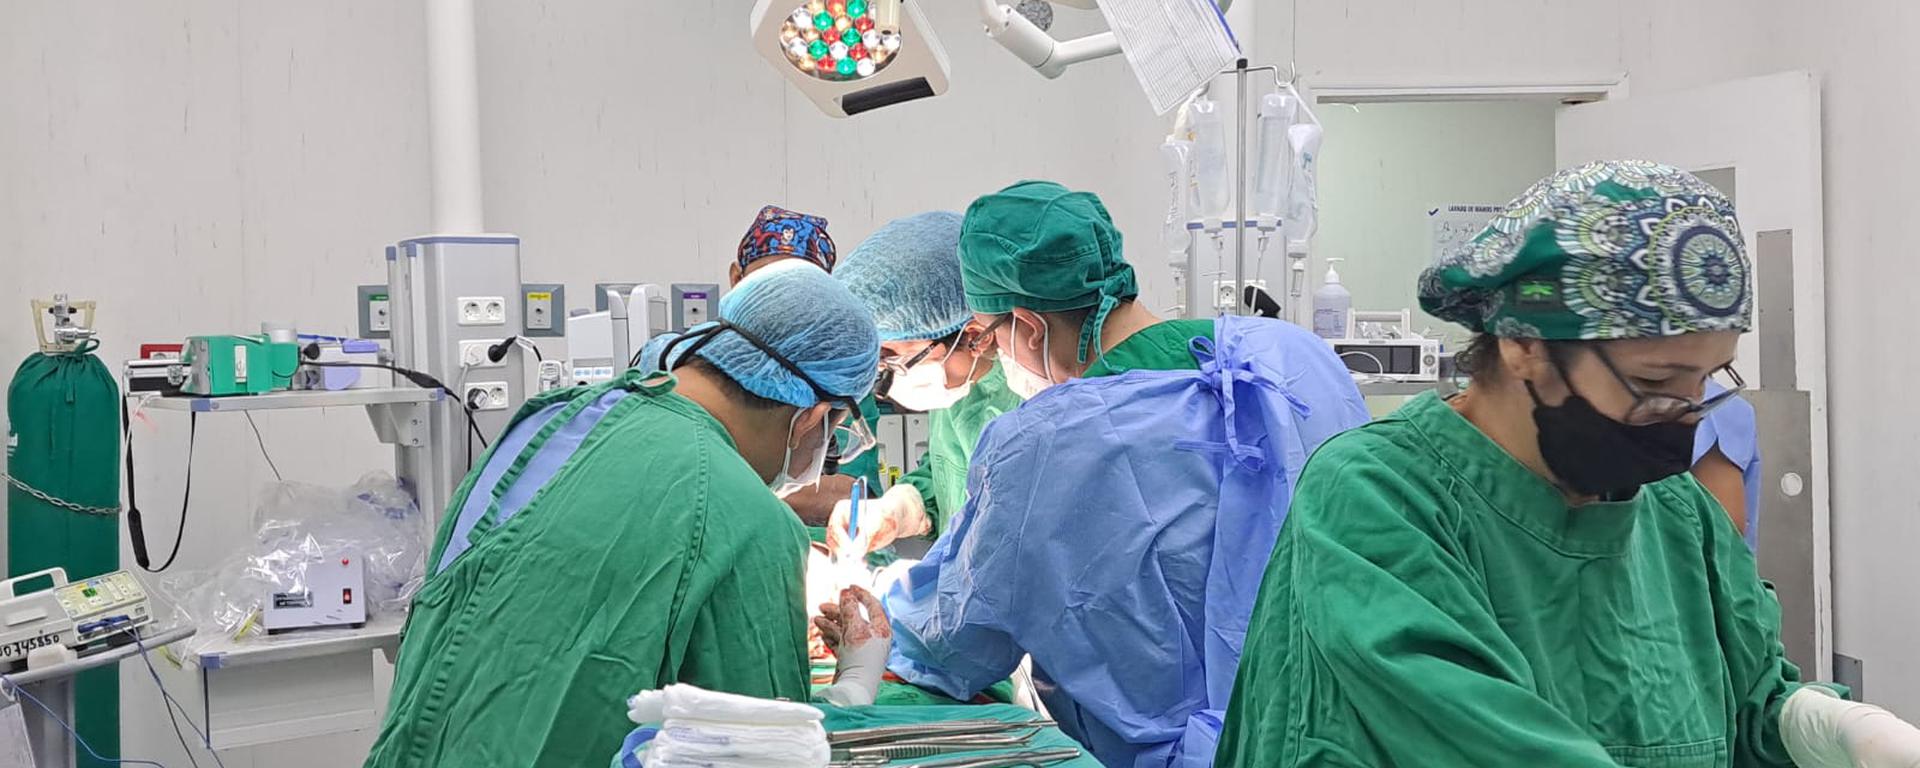 Los trasplantes de riñón y dos novedades que pueden revolucionar la salud